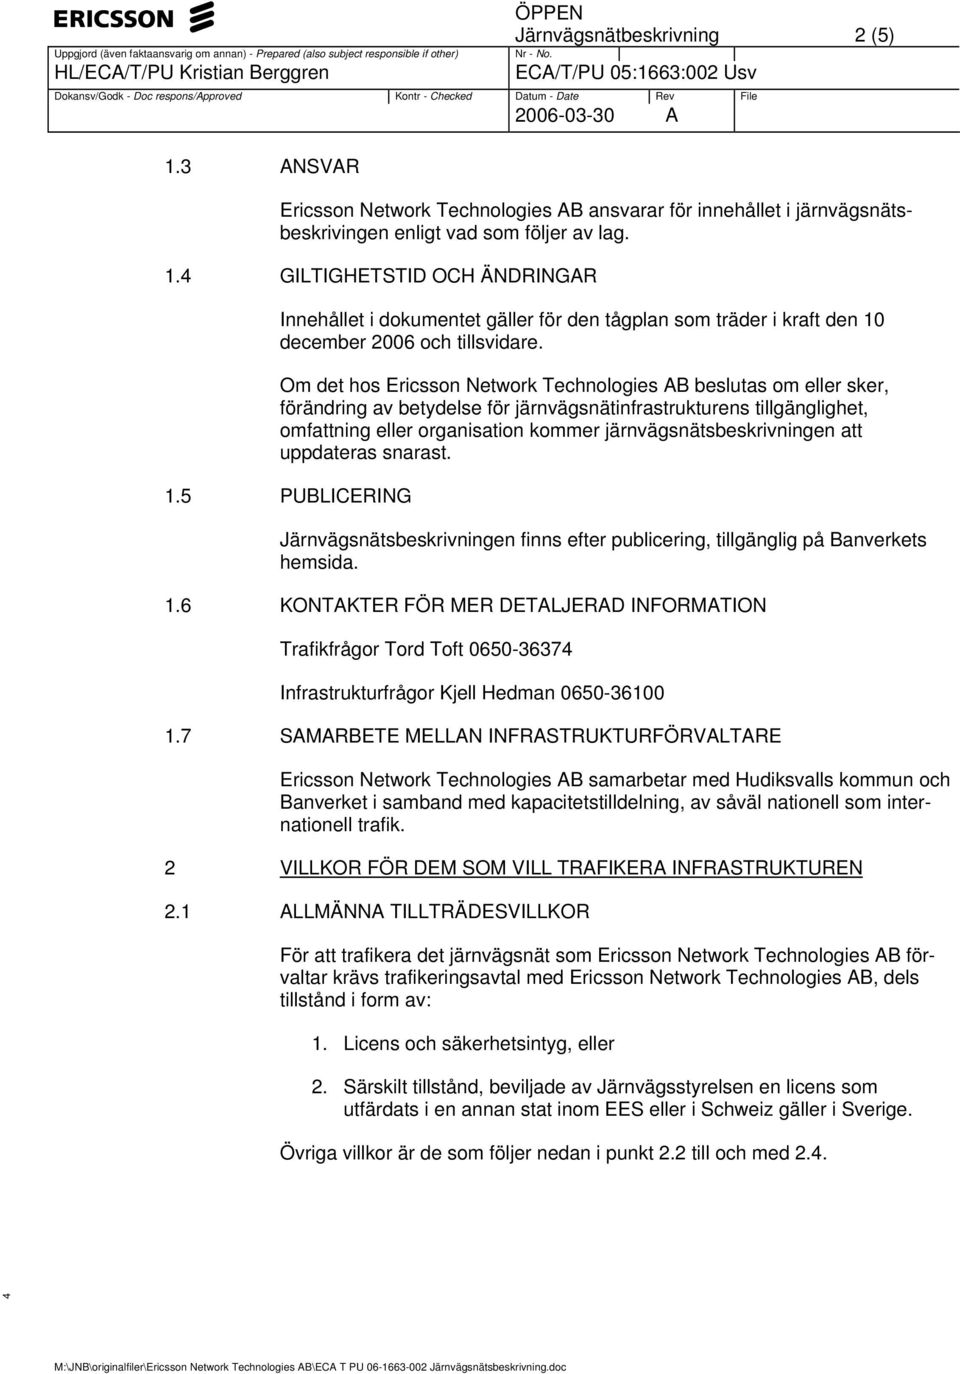 järnvägsnätsbeskrivningen att uppdateras snarast. 1.5 PUBLICERING Järnvägsnätsbeskrivningen finns efter publicering, tillgänglig på Banverkets hemsida. 1.6 KONTAKTER FÖR MER DETALJERAD INFORMATION Trafikfrågor Tord Toft 0650-36374 Infrastrukturfrågor Kjell Hedman 0650-36100 1.